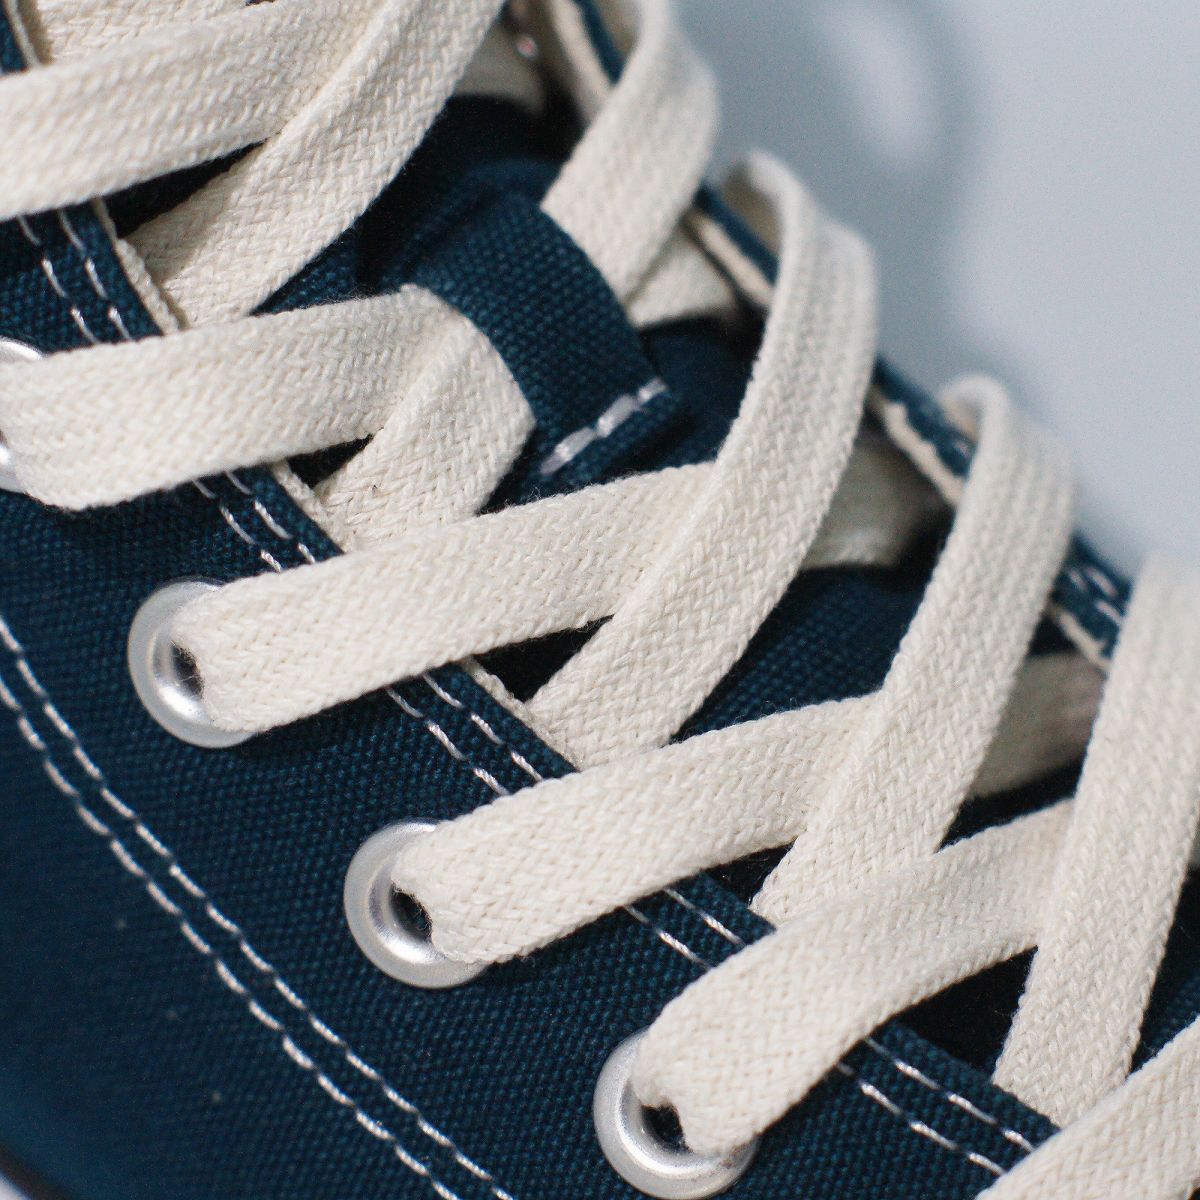 DÂY GIÀY FLAT (Dây giày dẹp) - CREAM | King shoe laces tại HCM